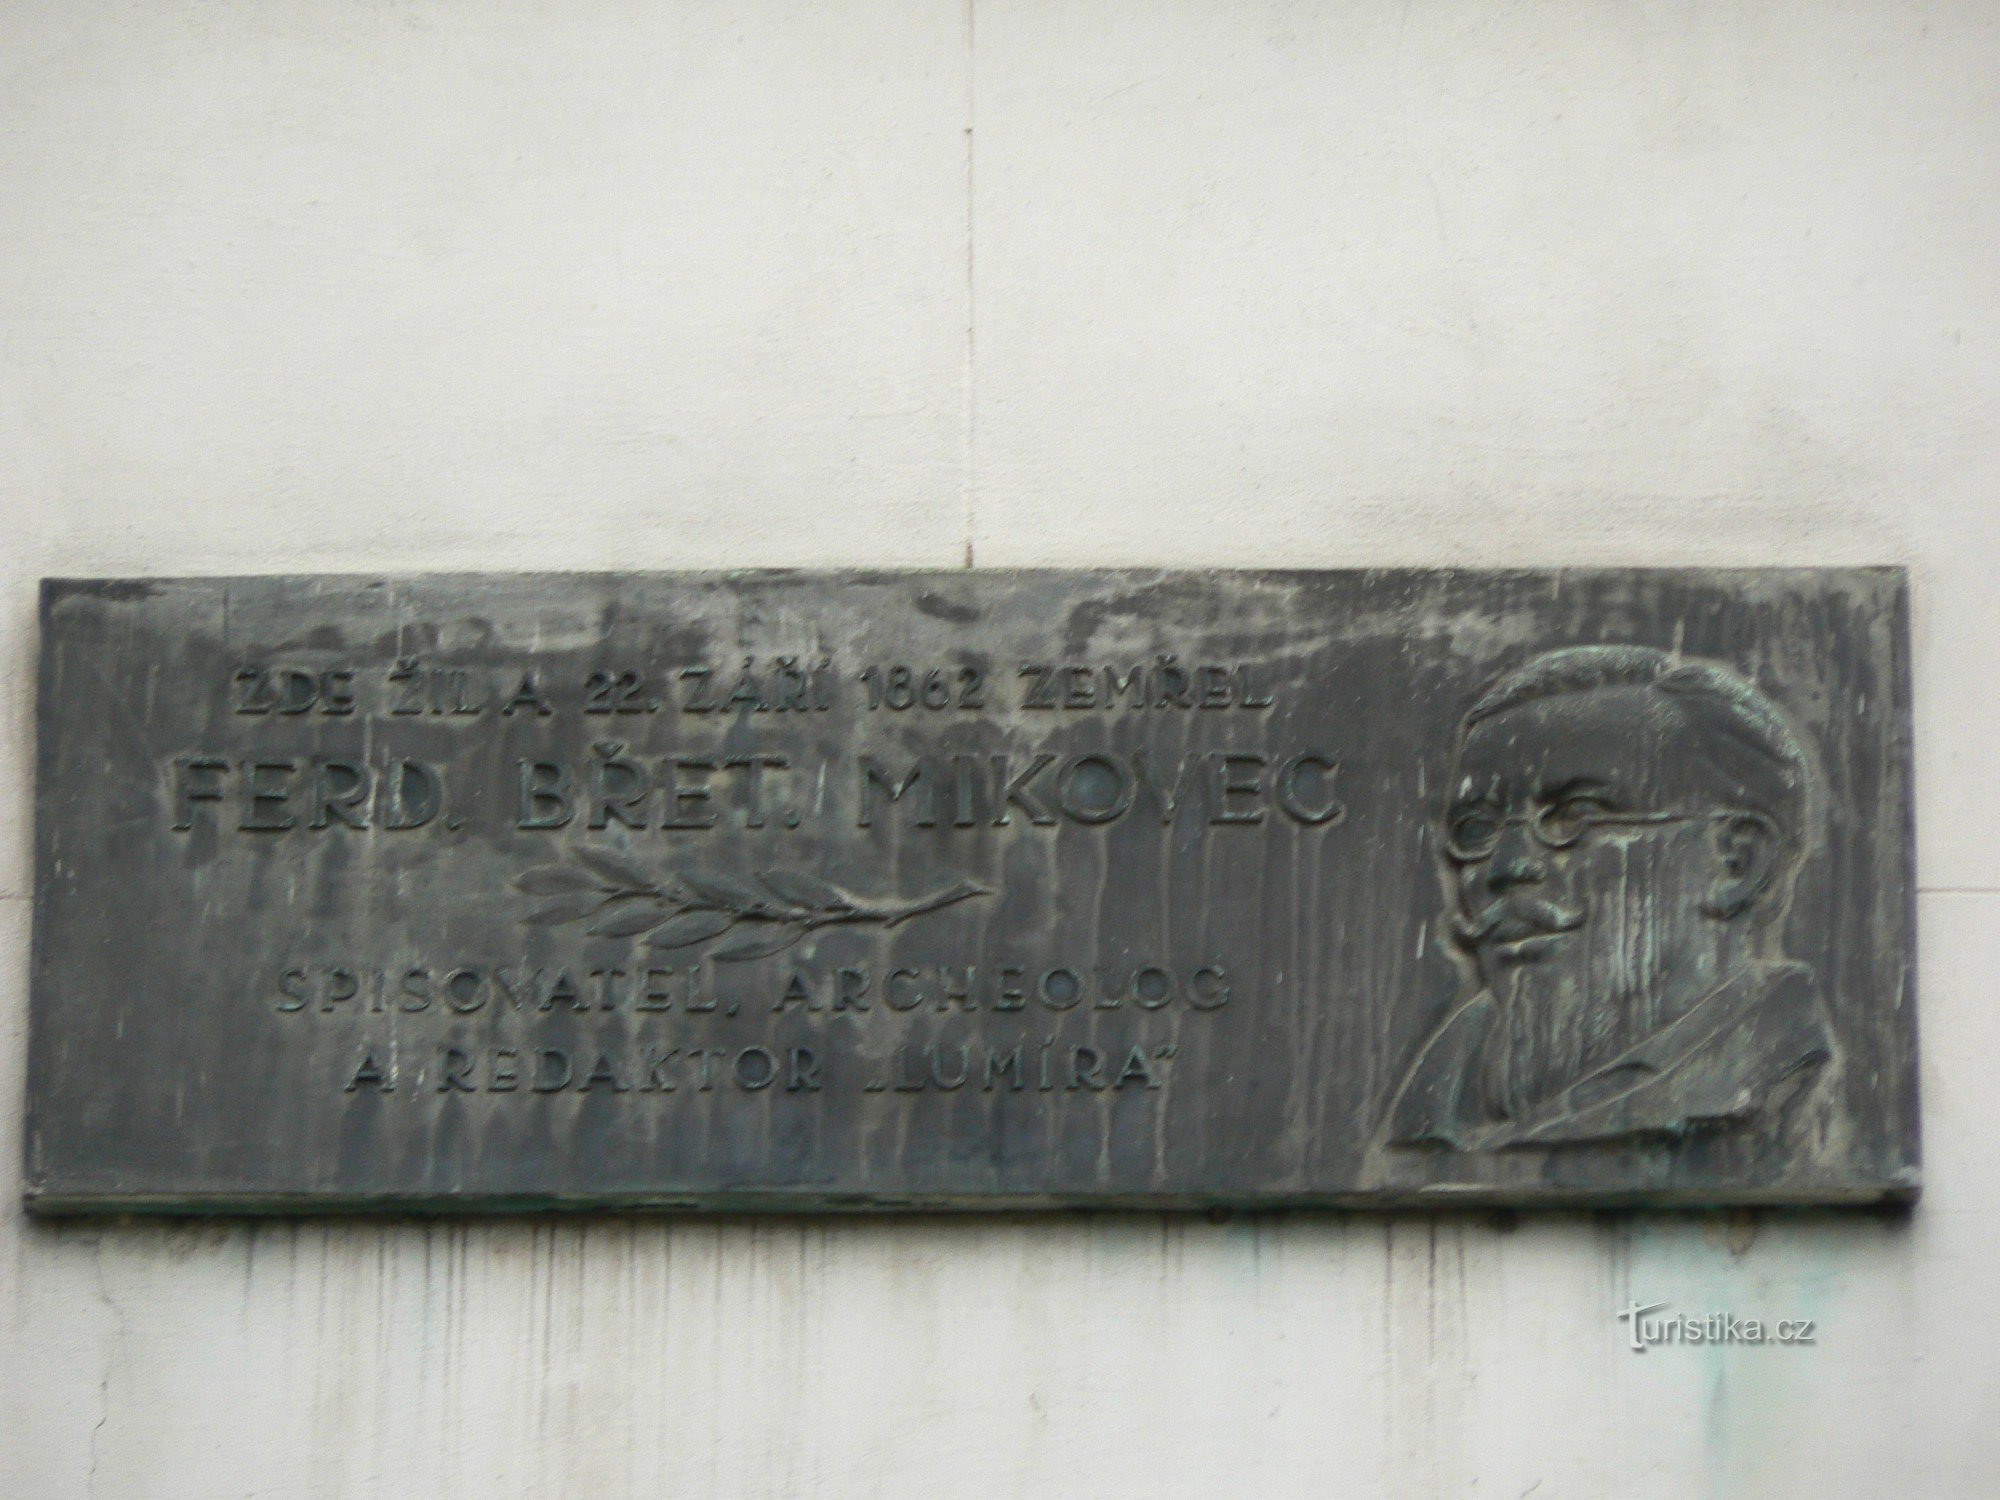 Spominska plošča Ferdinanda Břetislava Mikovca